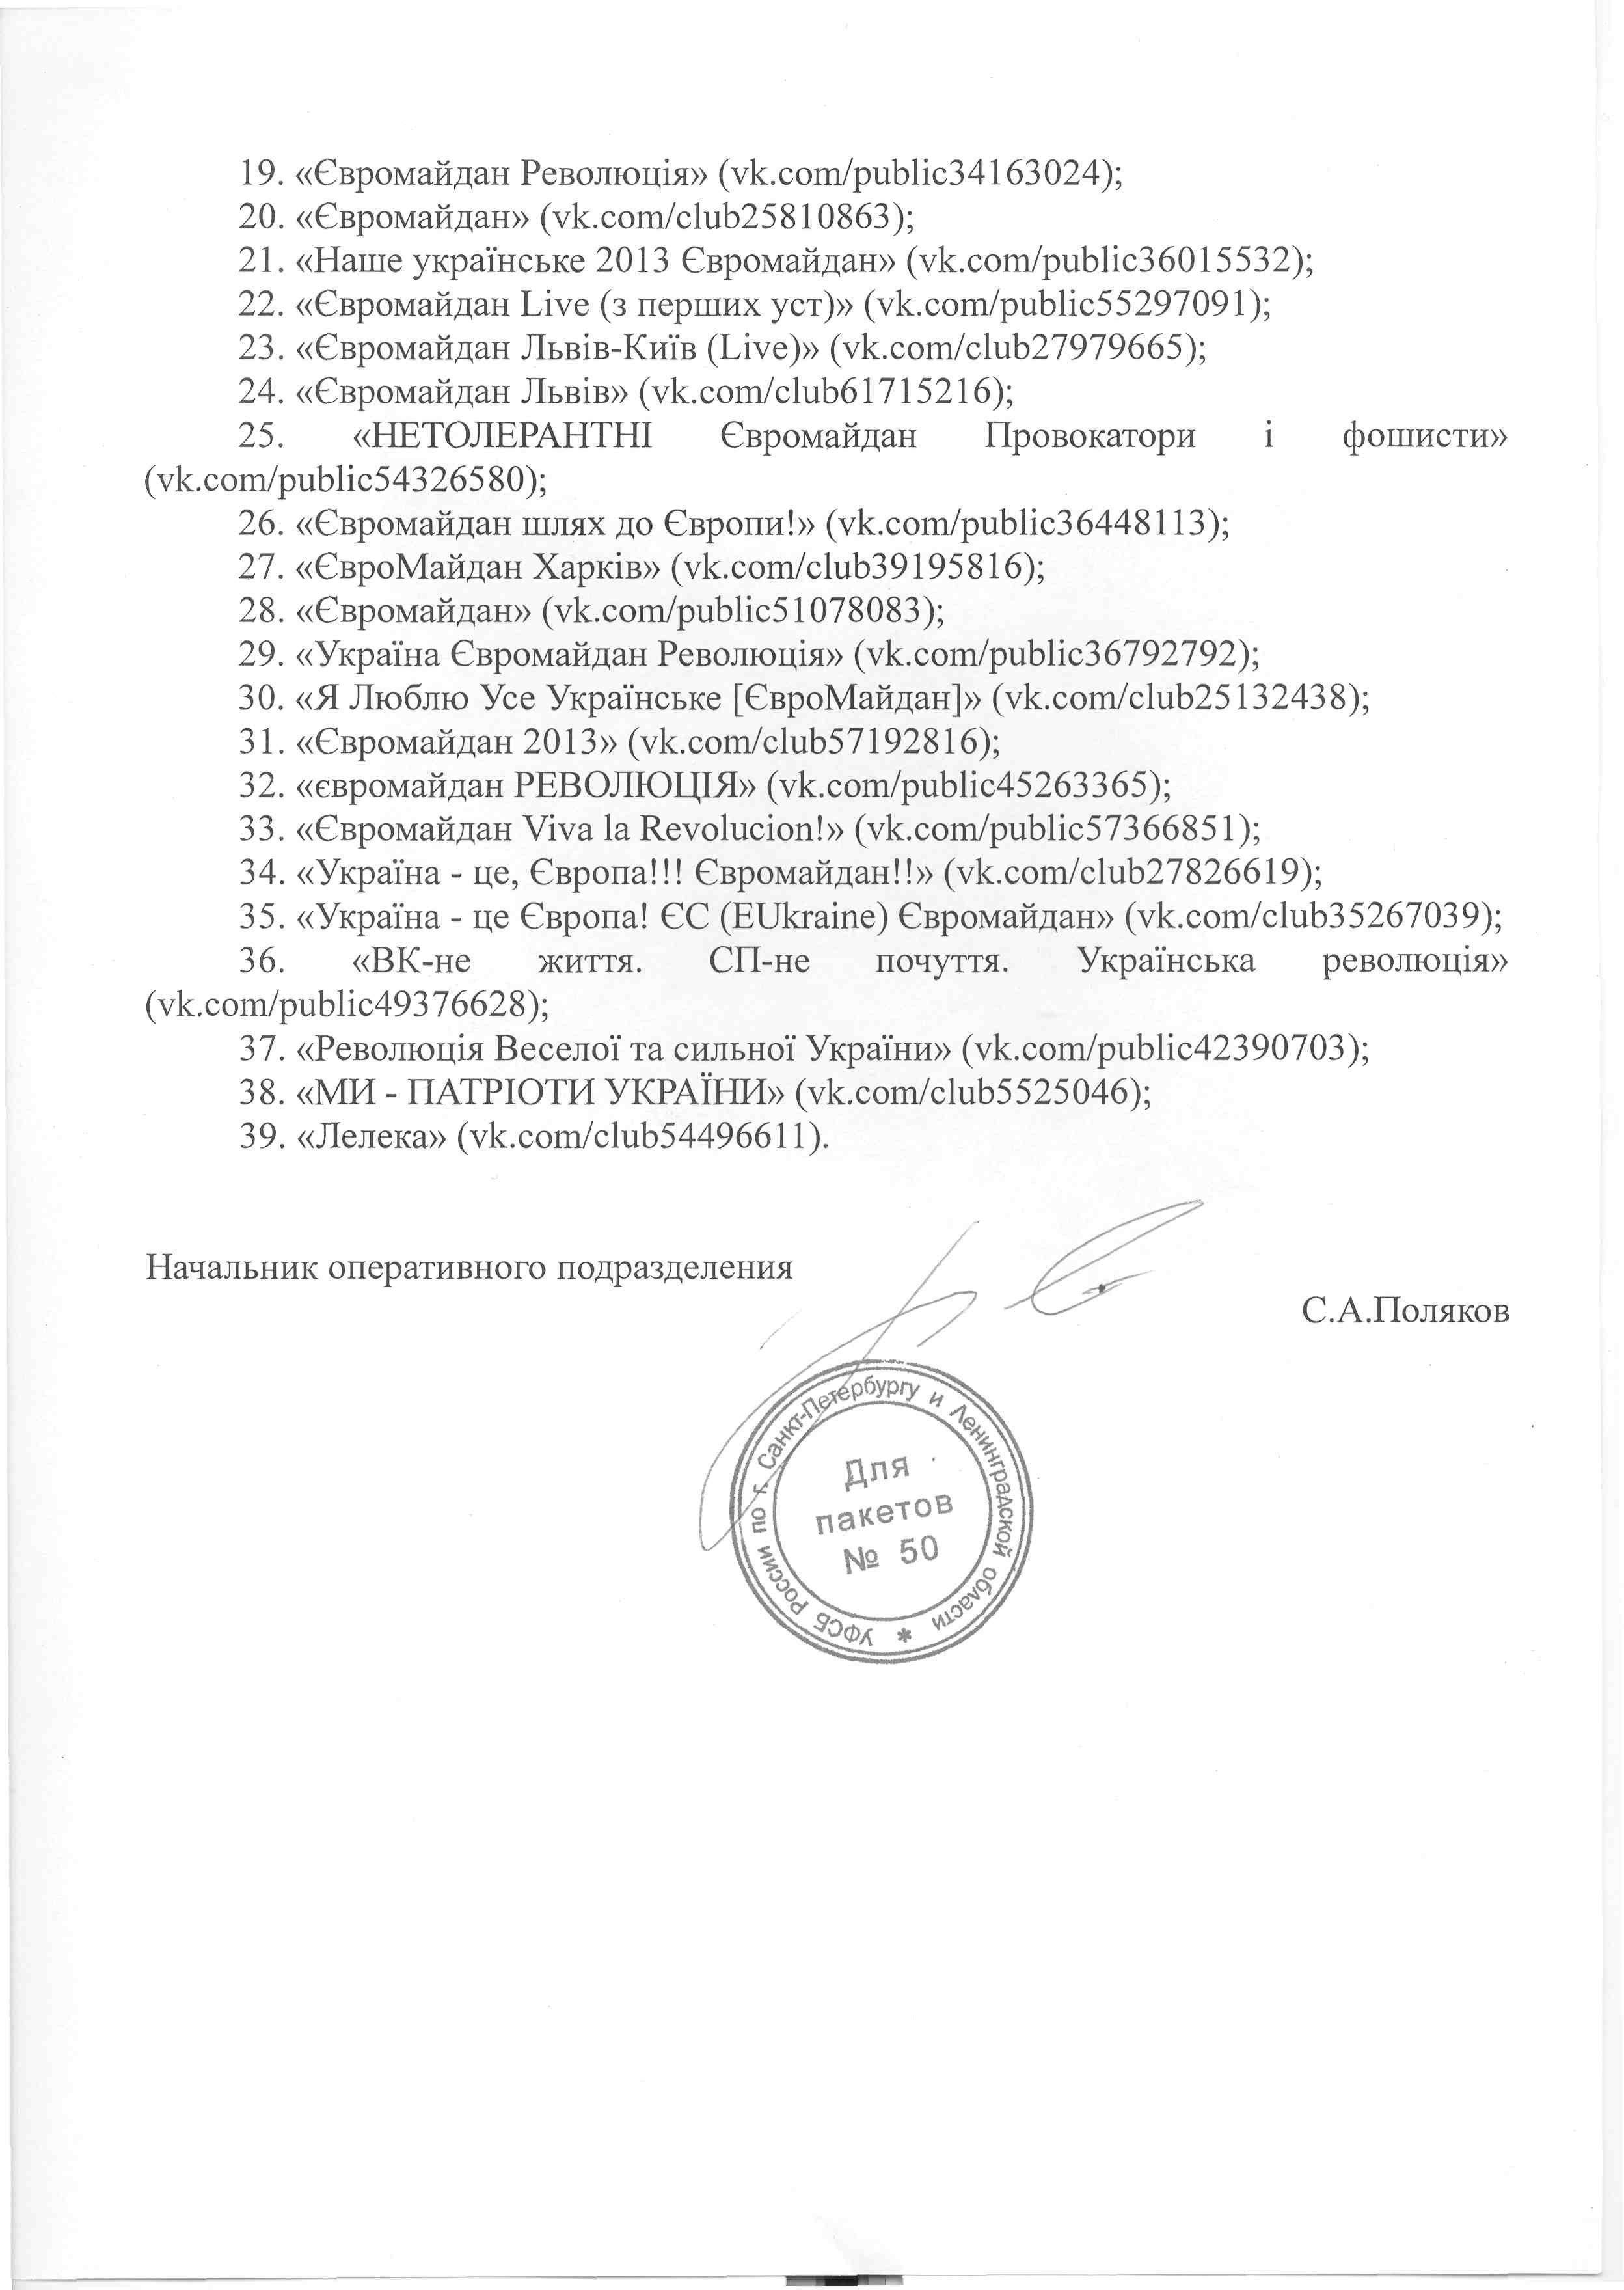 Дуров рассказал о требовании ФСБ передать данные по группам Евромайдана